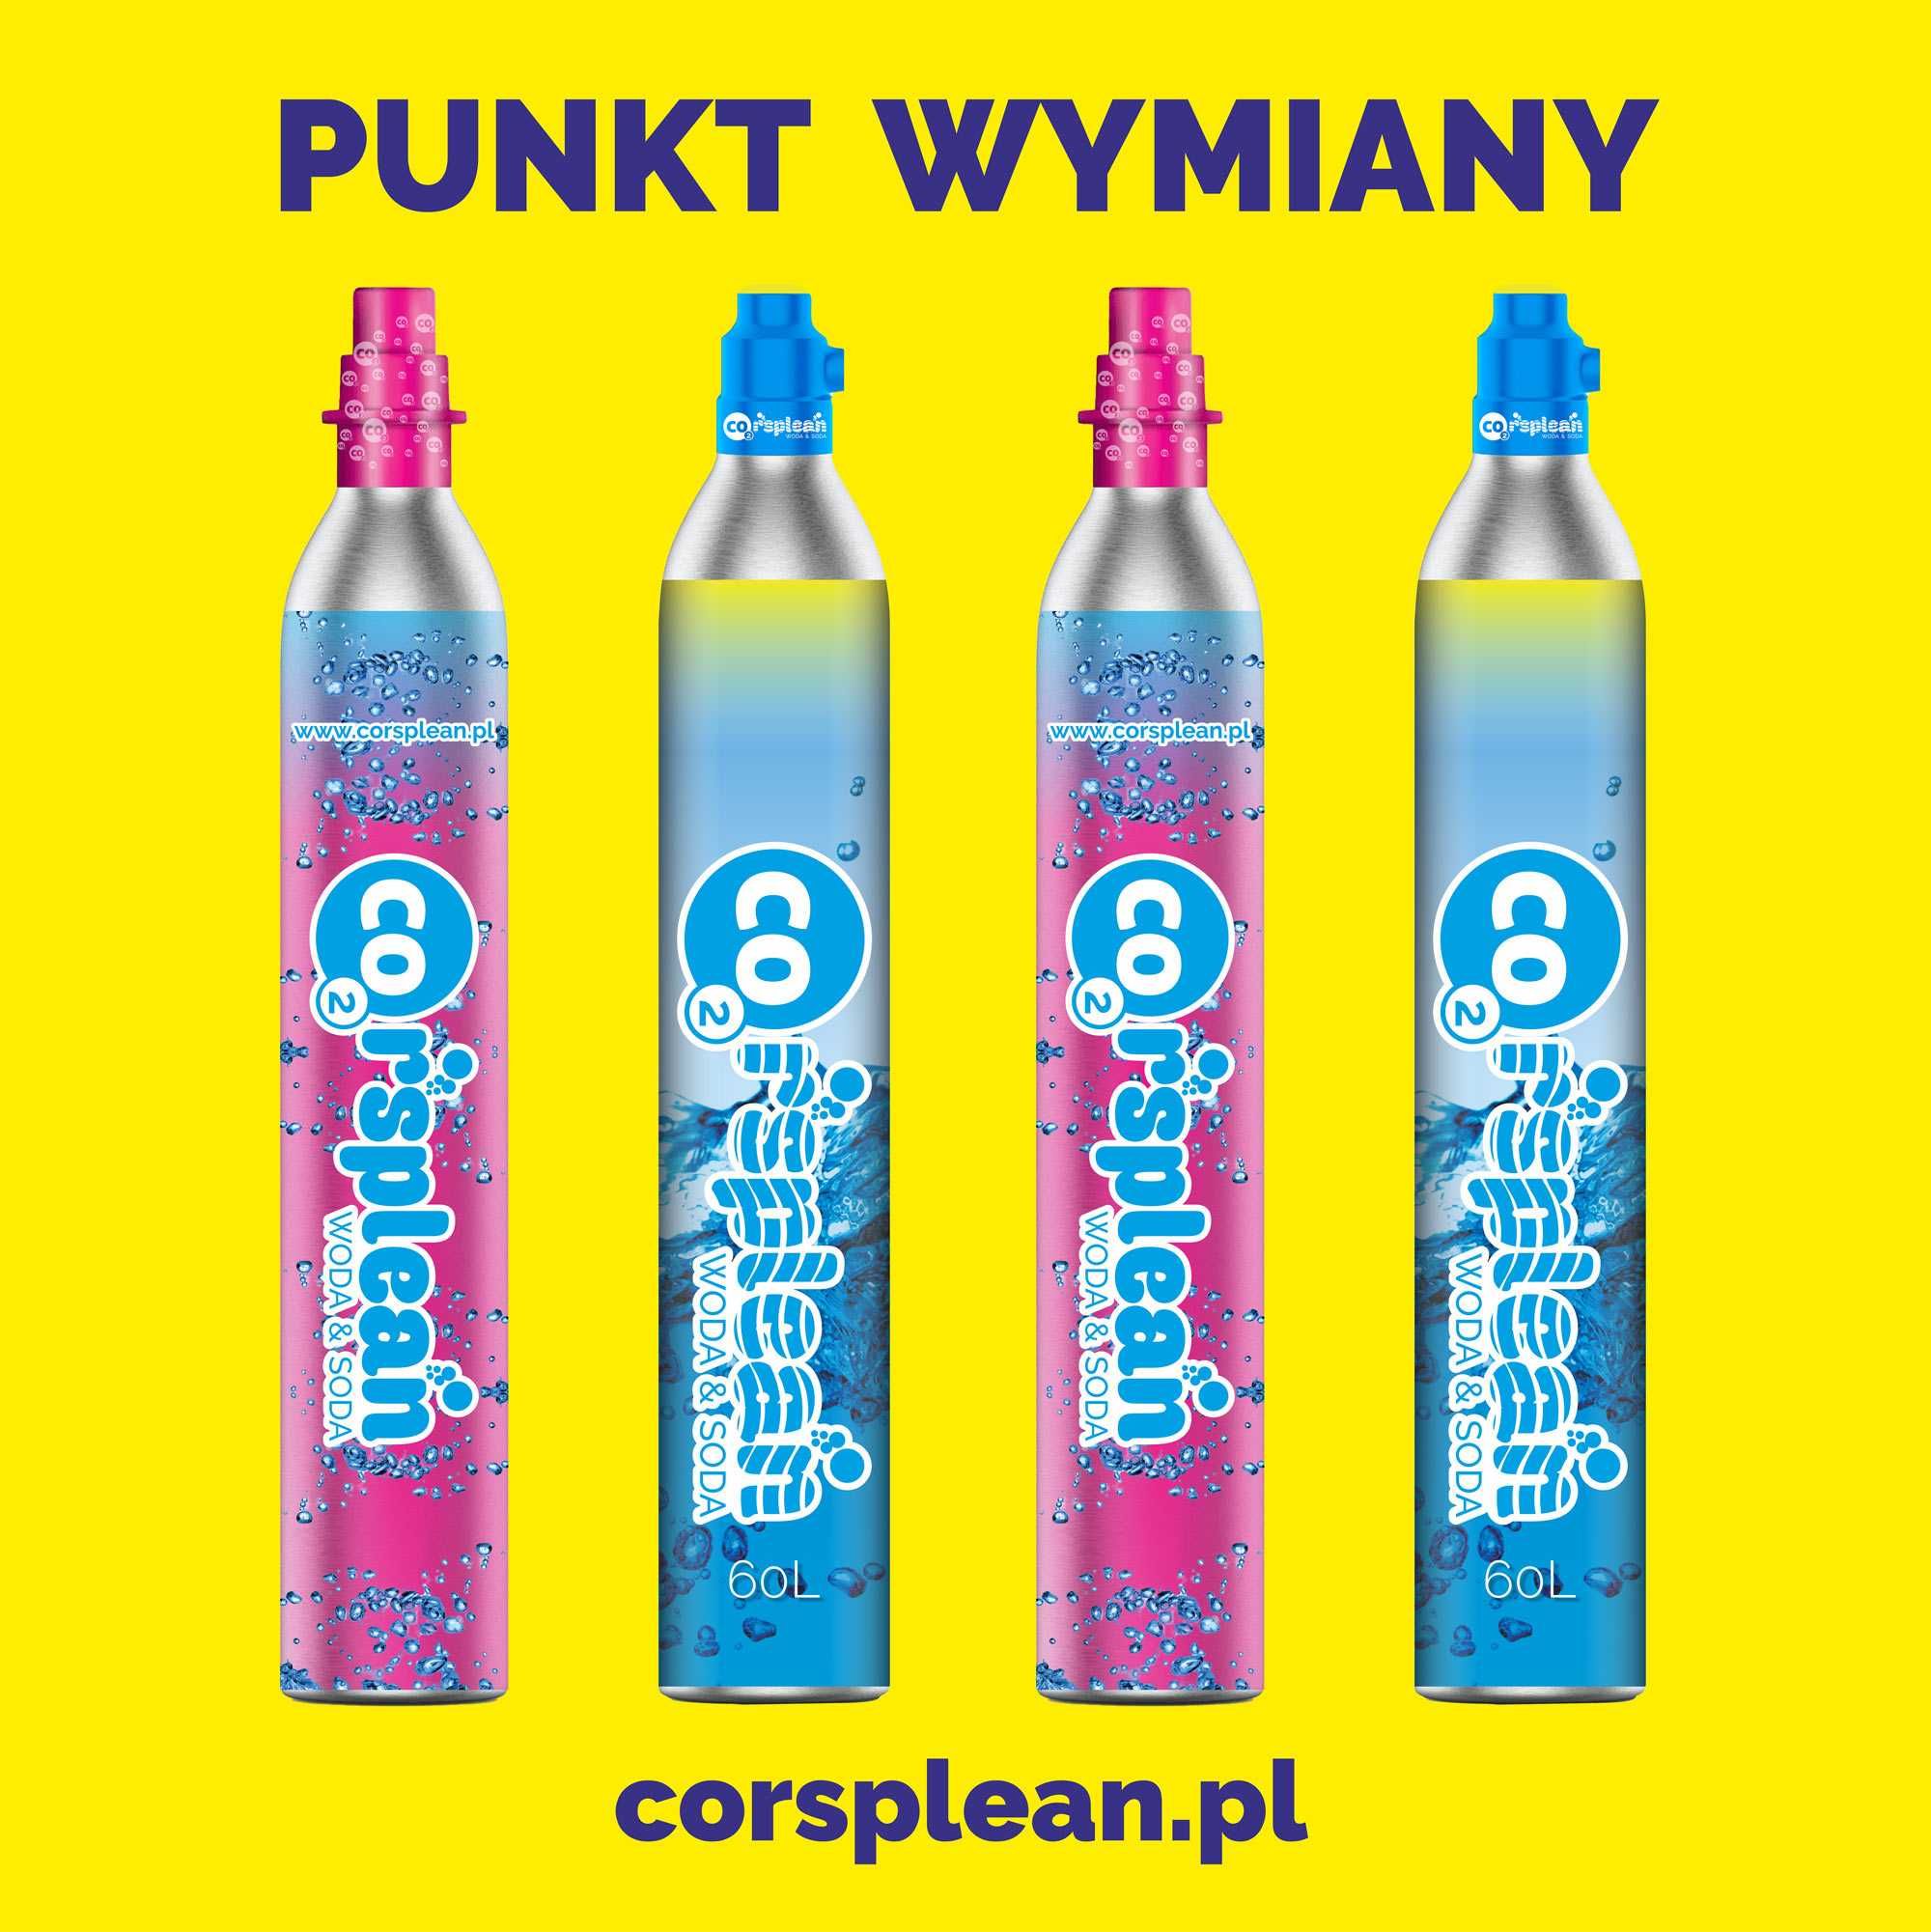 24h/7 wymiana Sodastream Philips i inne butla nabicie CO2 BIAŁYSTOK